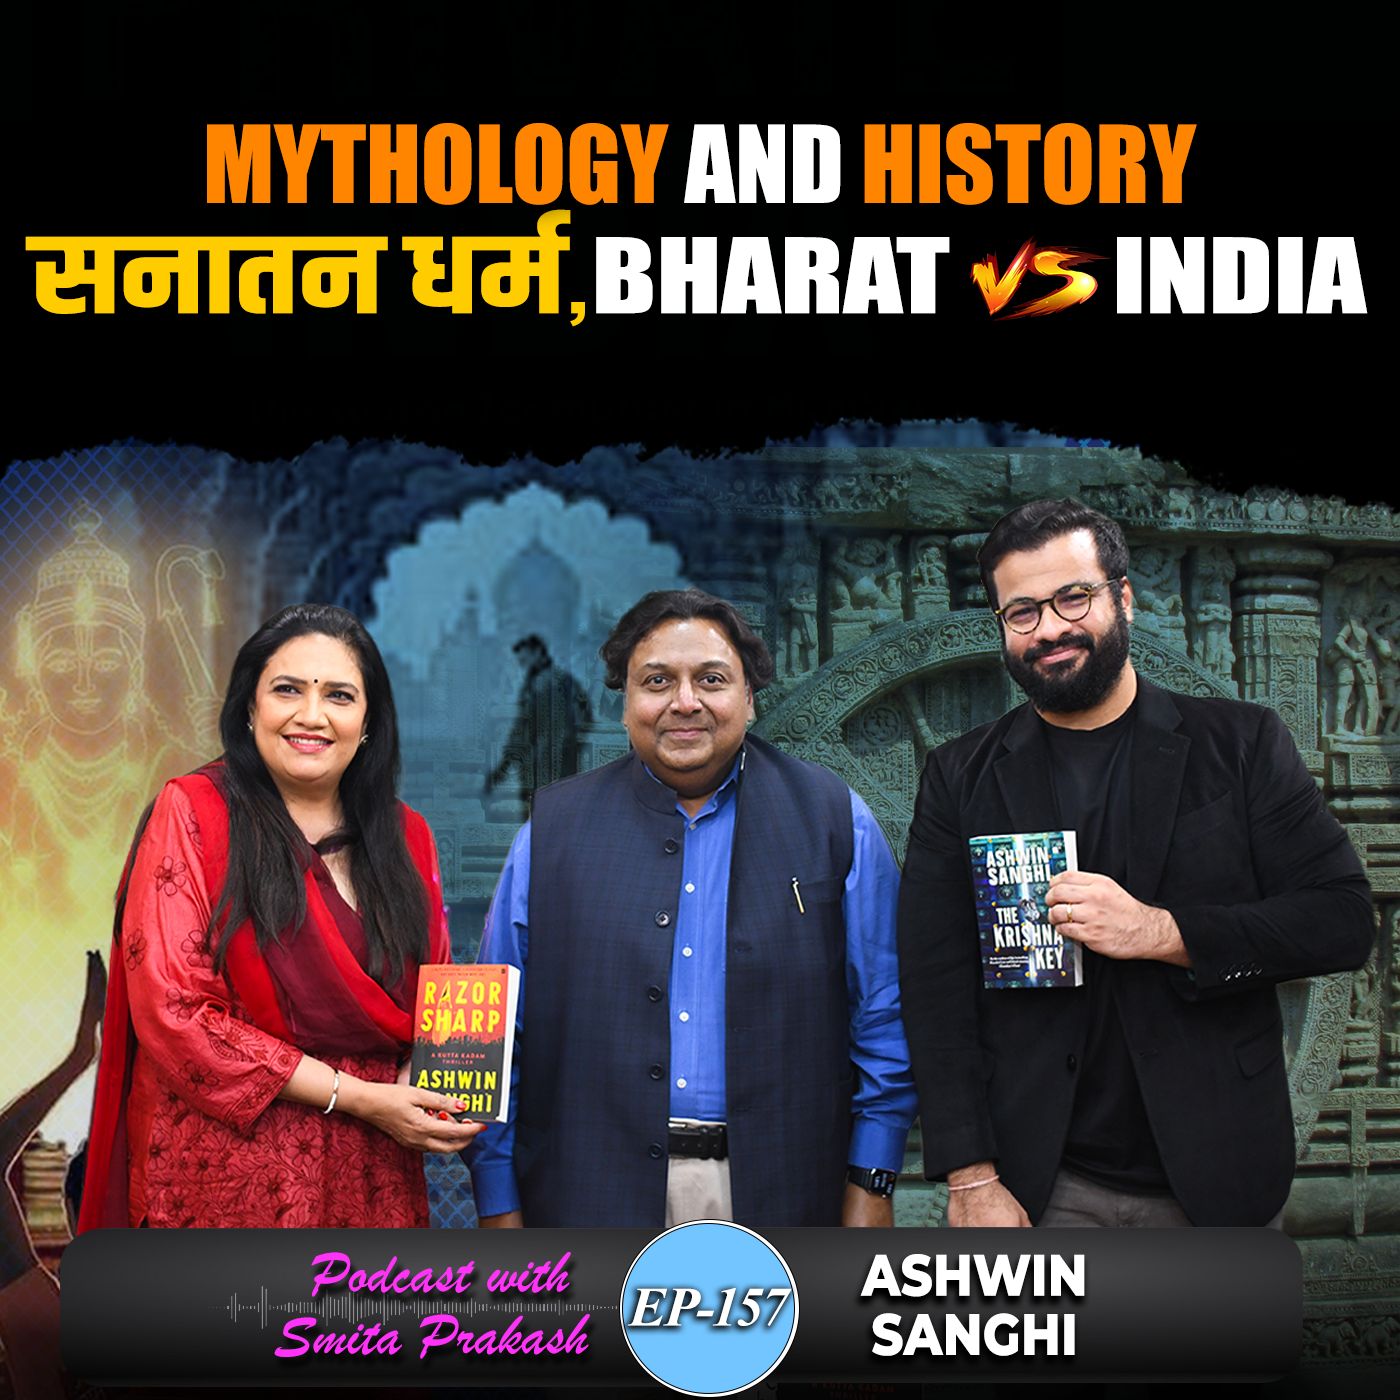 EP 157 - Mythology and History, Art of Storytelling, Sanatana, Bharat vs India with Ashwin Sanghi